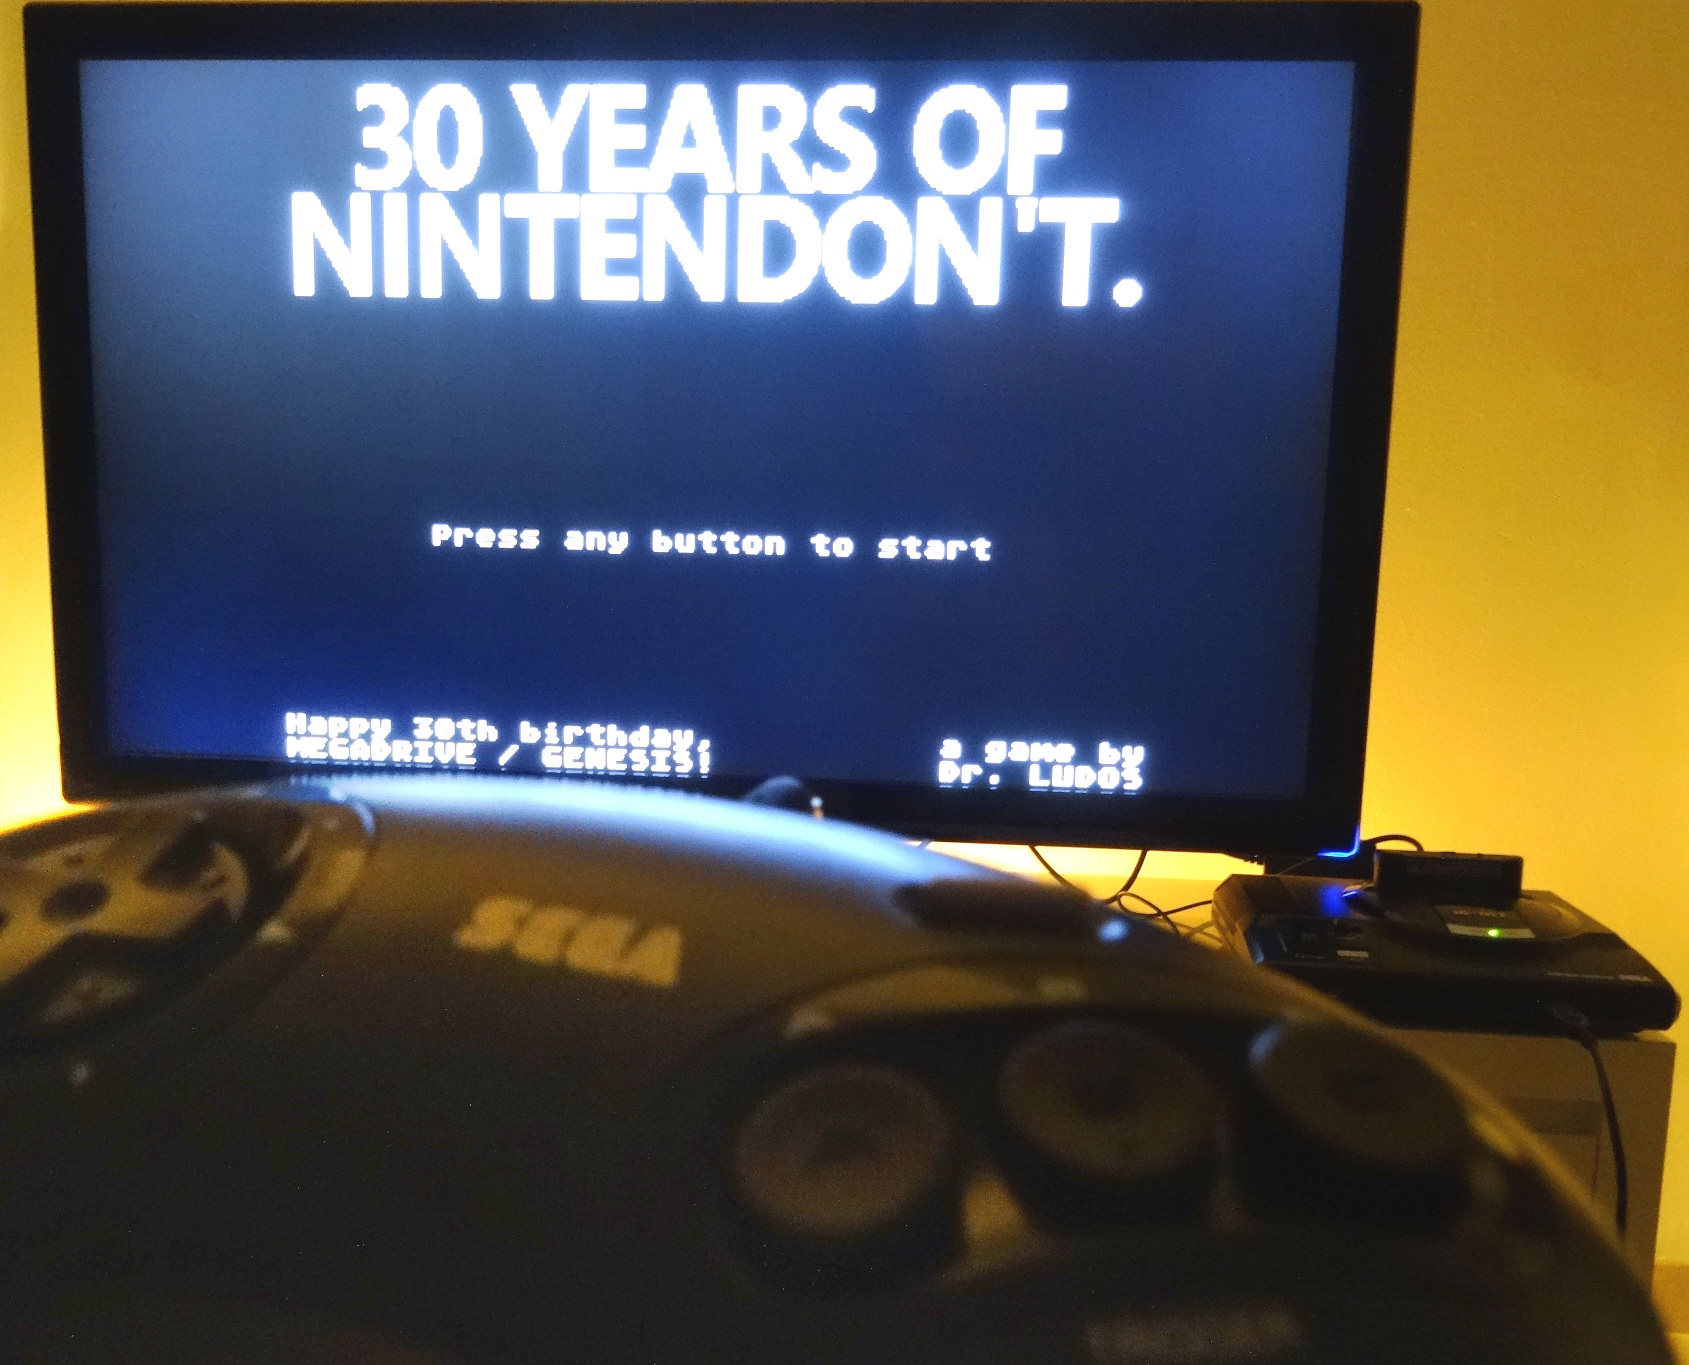 30 years of Nintendon't for Sega Genesis and Mega Drive on real screen